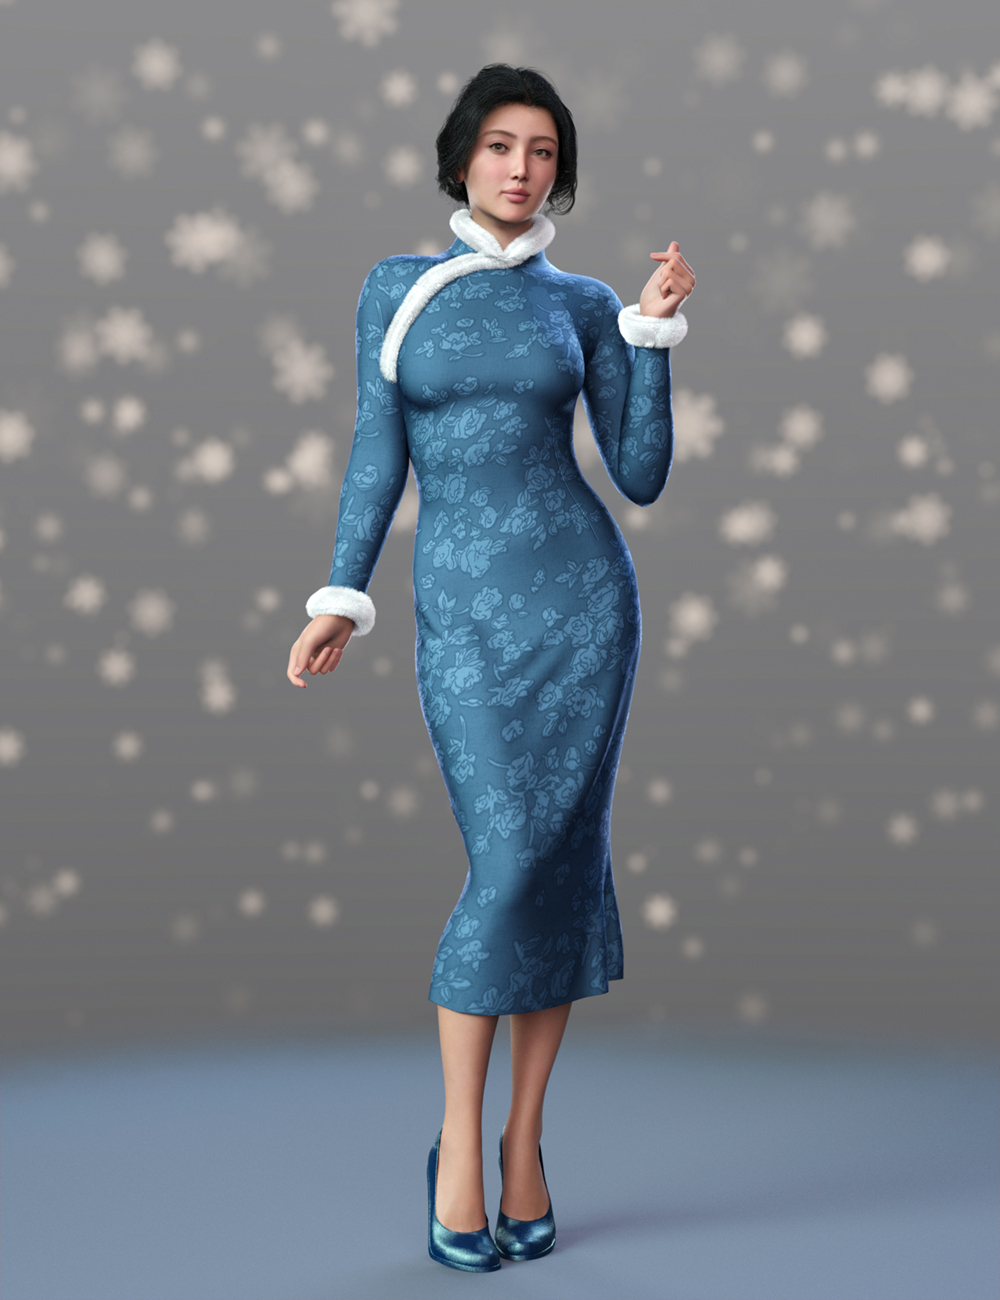 dForce MK Winter Cheongsam Dress for Genesis 9 by: wsmonkeyking, 3D Models by Daz 3D